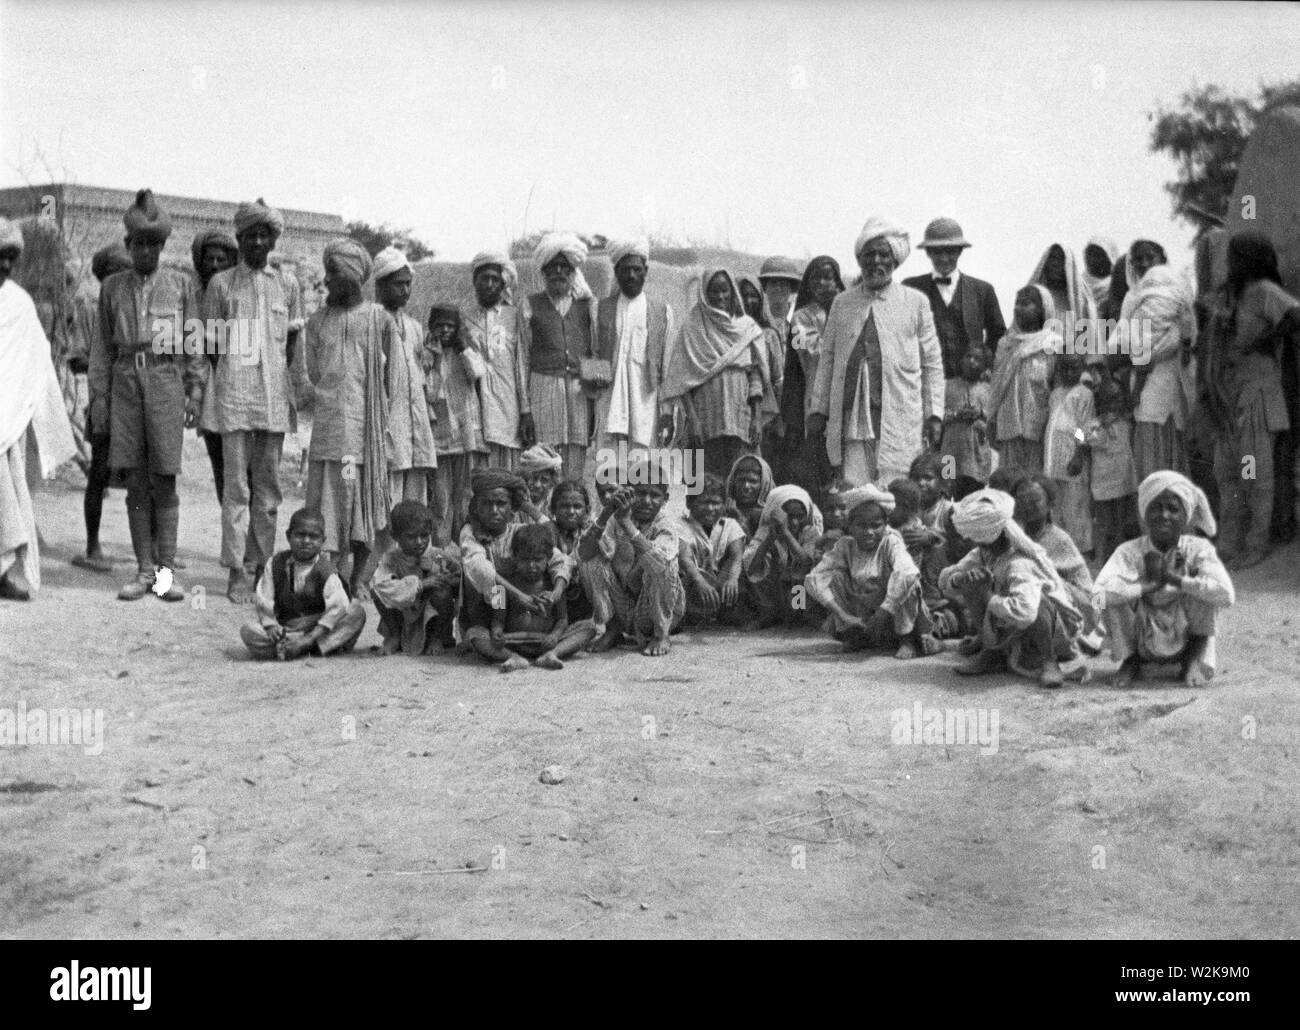 Collecte de village en Inde sous le Raj britannique en 1908 Banque D'Images